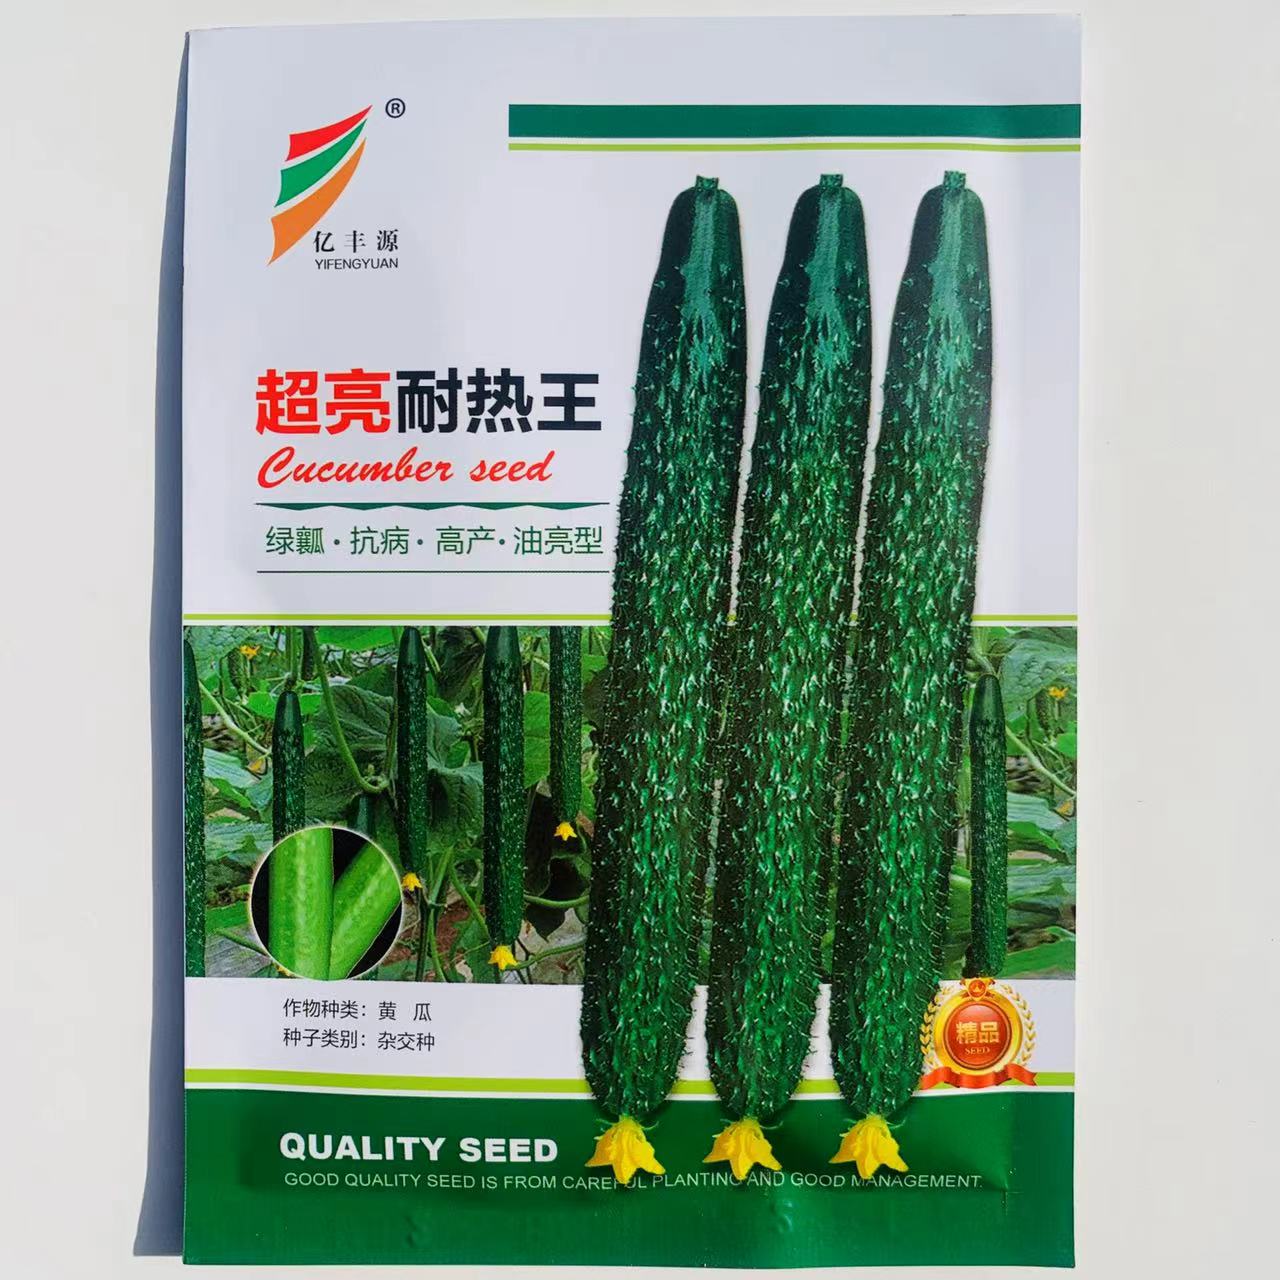 沭阳县黄瓜种子油亮密刺耐热瓜长35cm瓜色亮绿杂交种基地大田用种